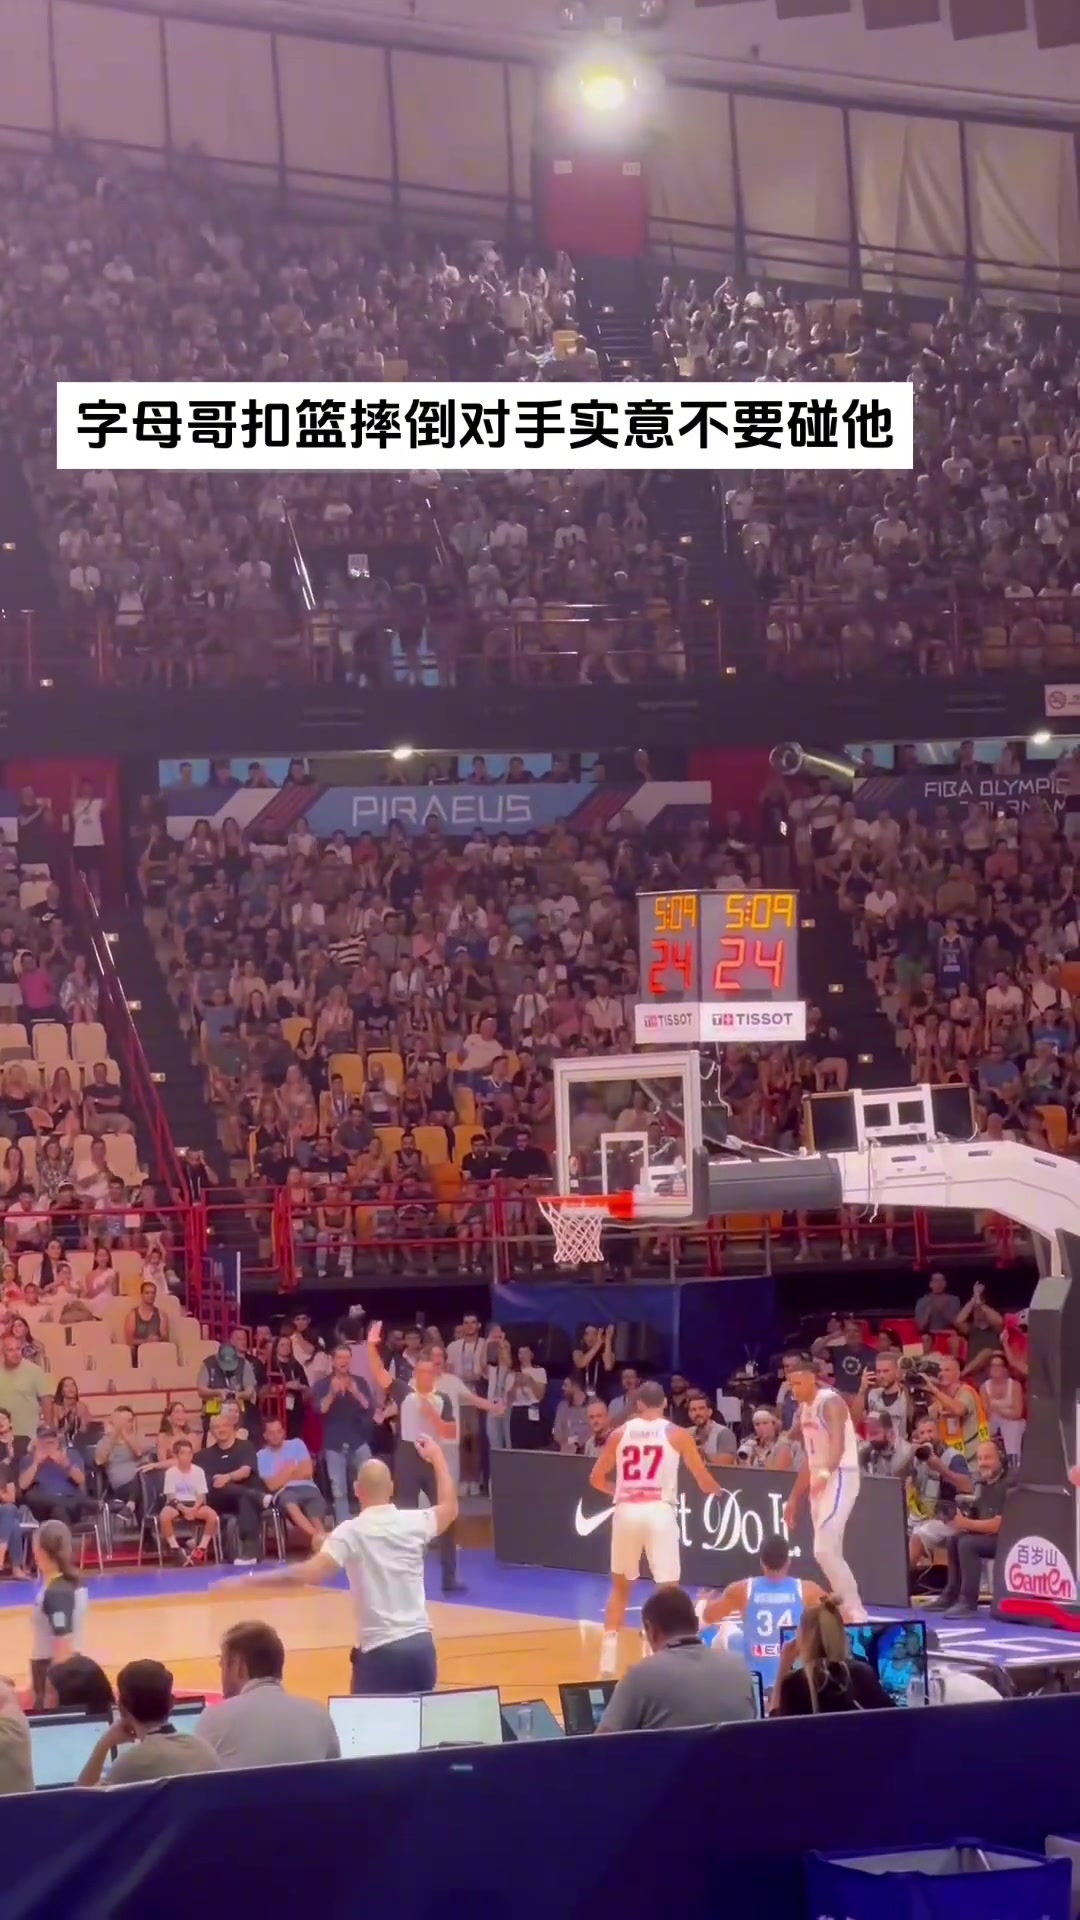 字母哥在FIBA赛场暴扣后对手拉着队友示意不要扶起